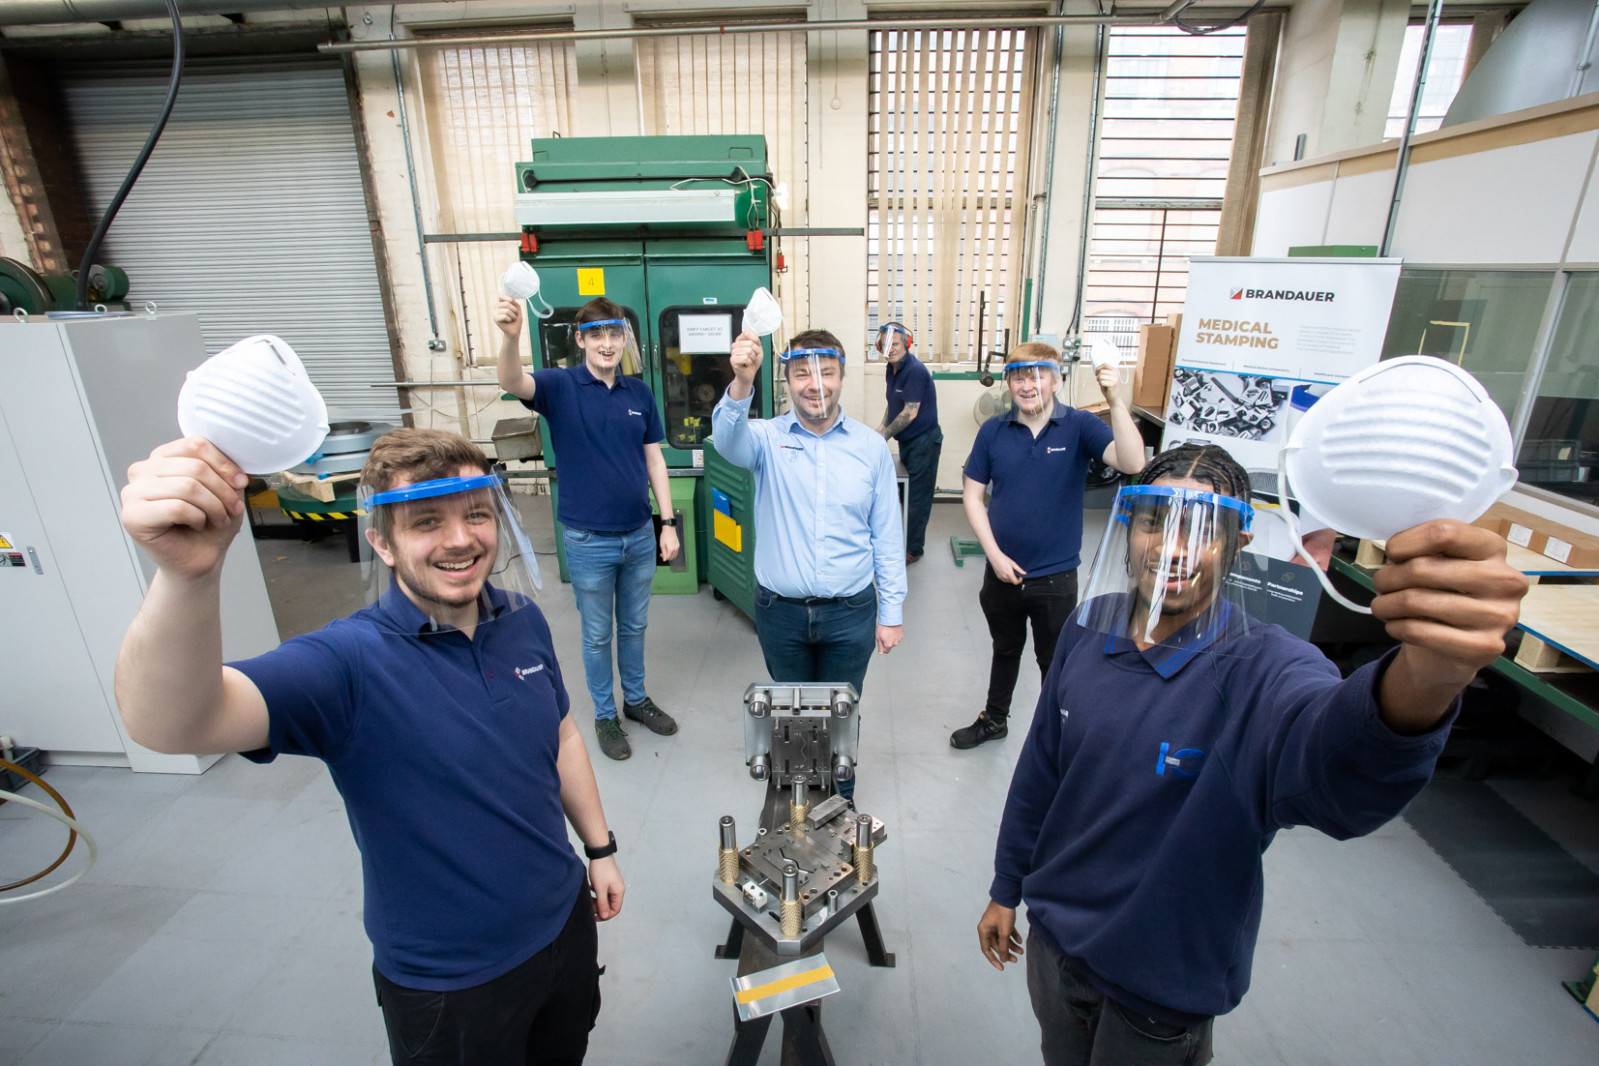 ‘Apprentice Power’ helps Brandauer secure £500,000 ‘nose clip’ reshoring op...